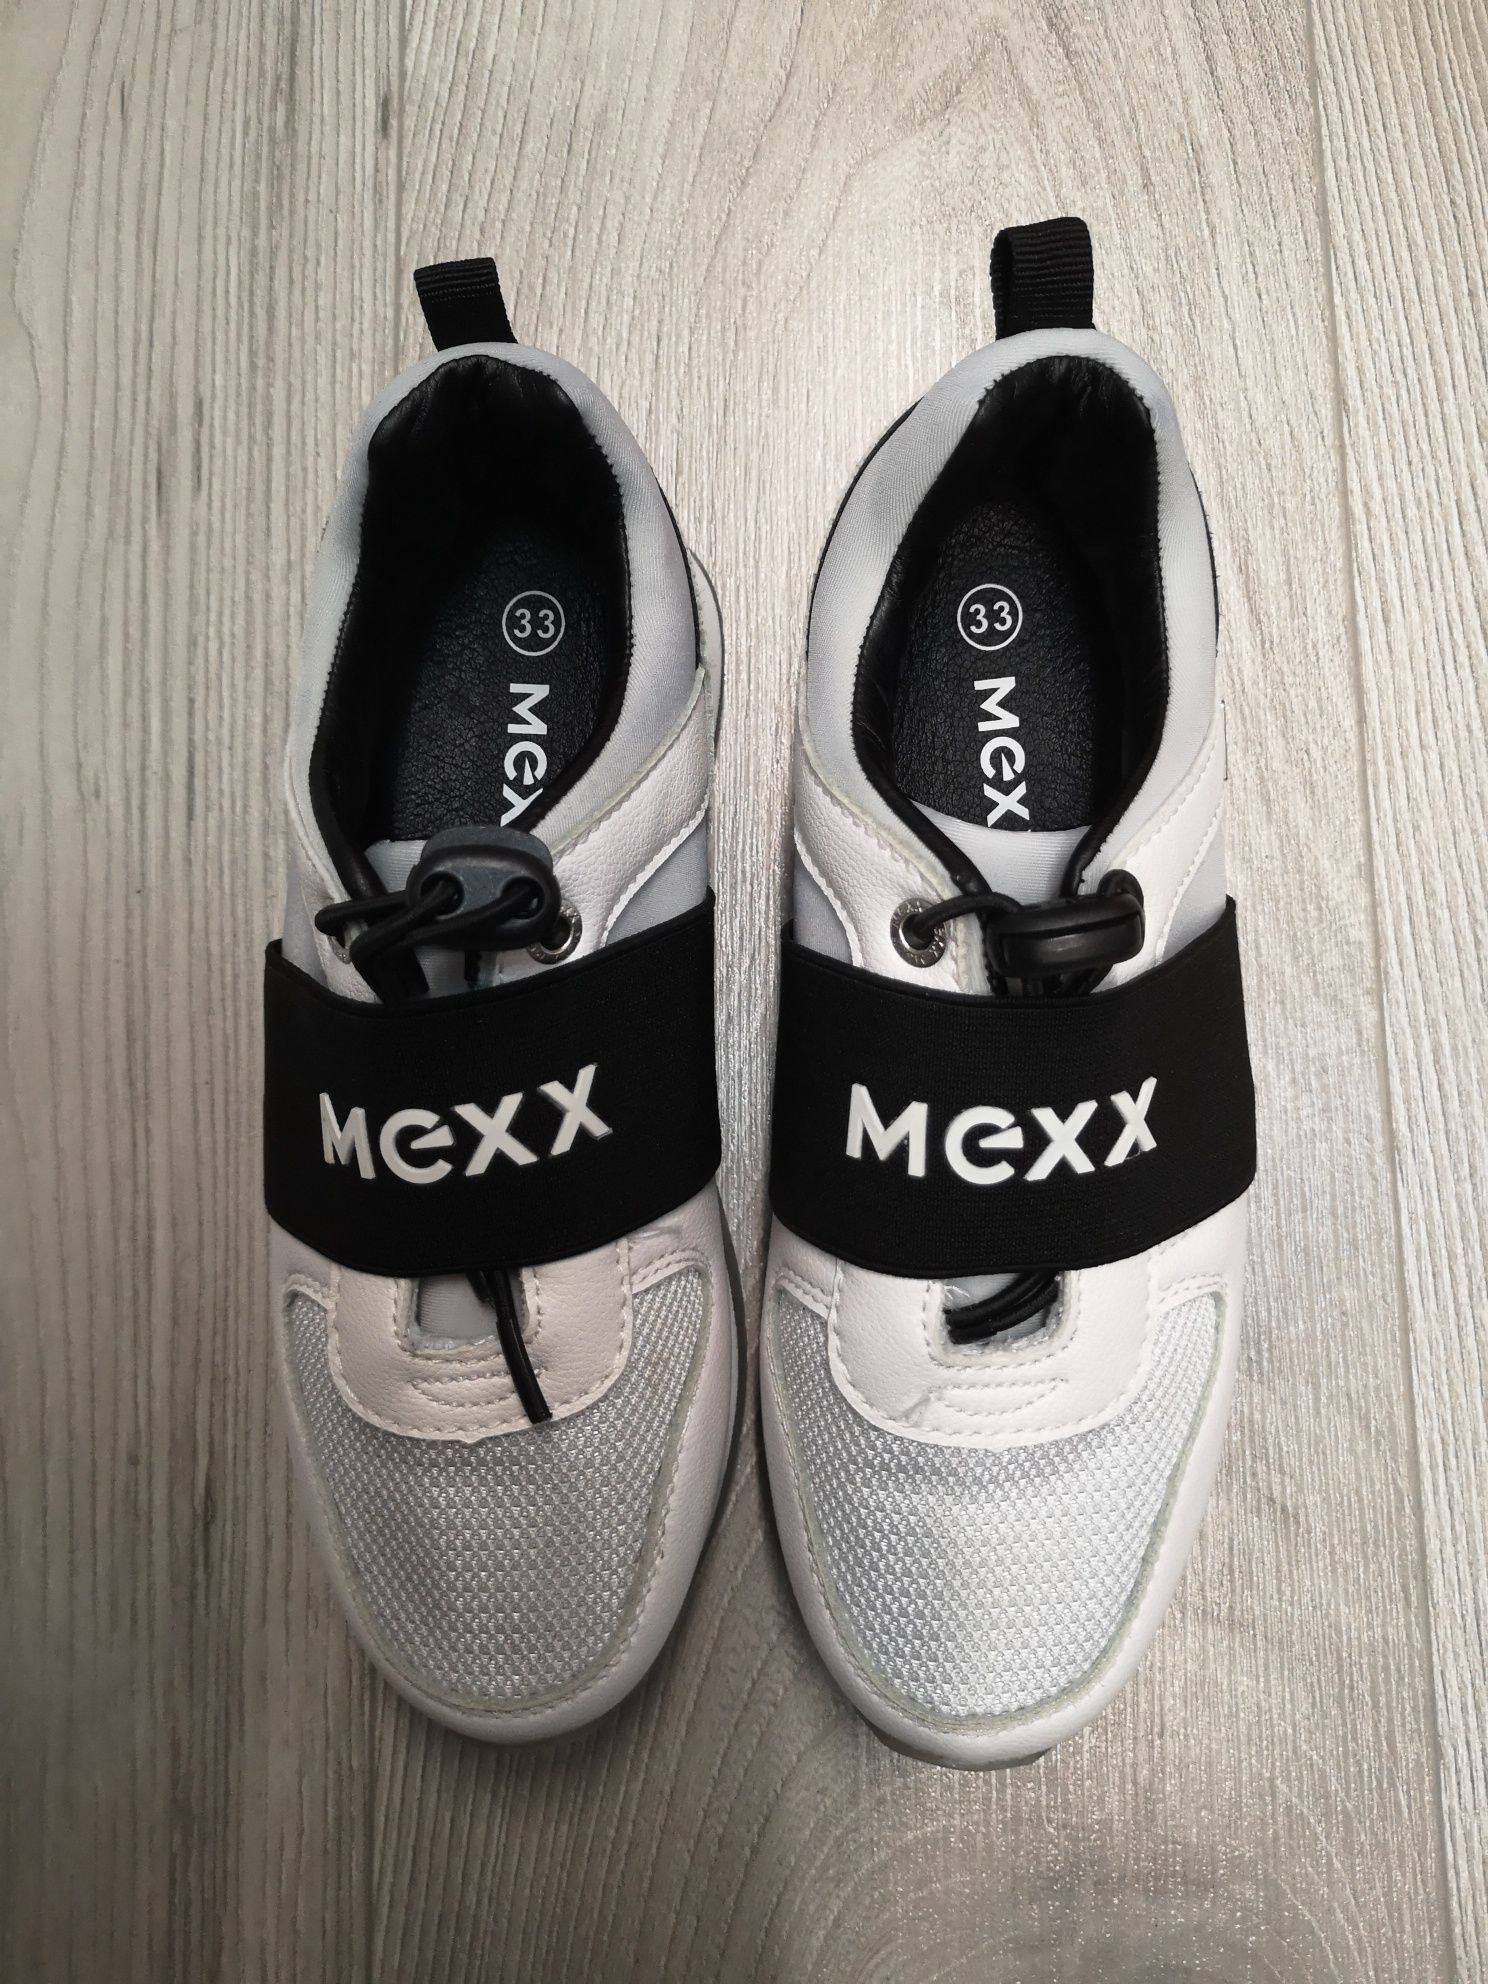 Buty dla dziewczynki MEXX r.33 jak nowe 21,5cm